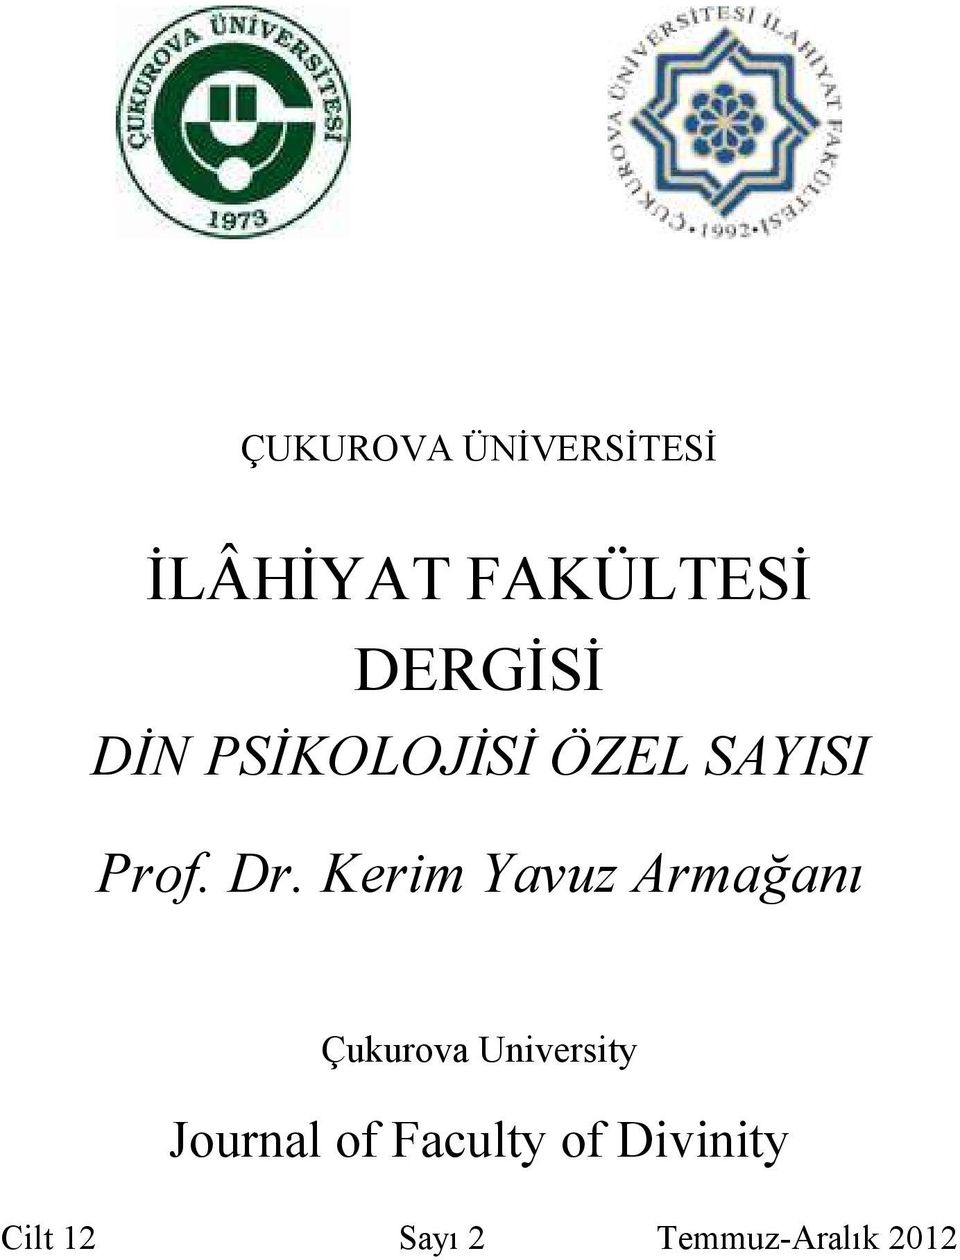 Kerim Yavuz Armağanı Çukurova University